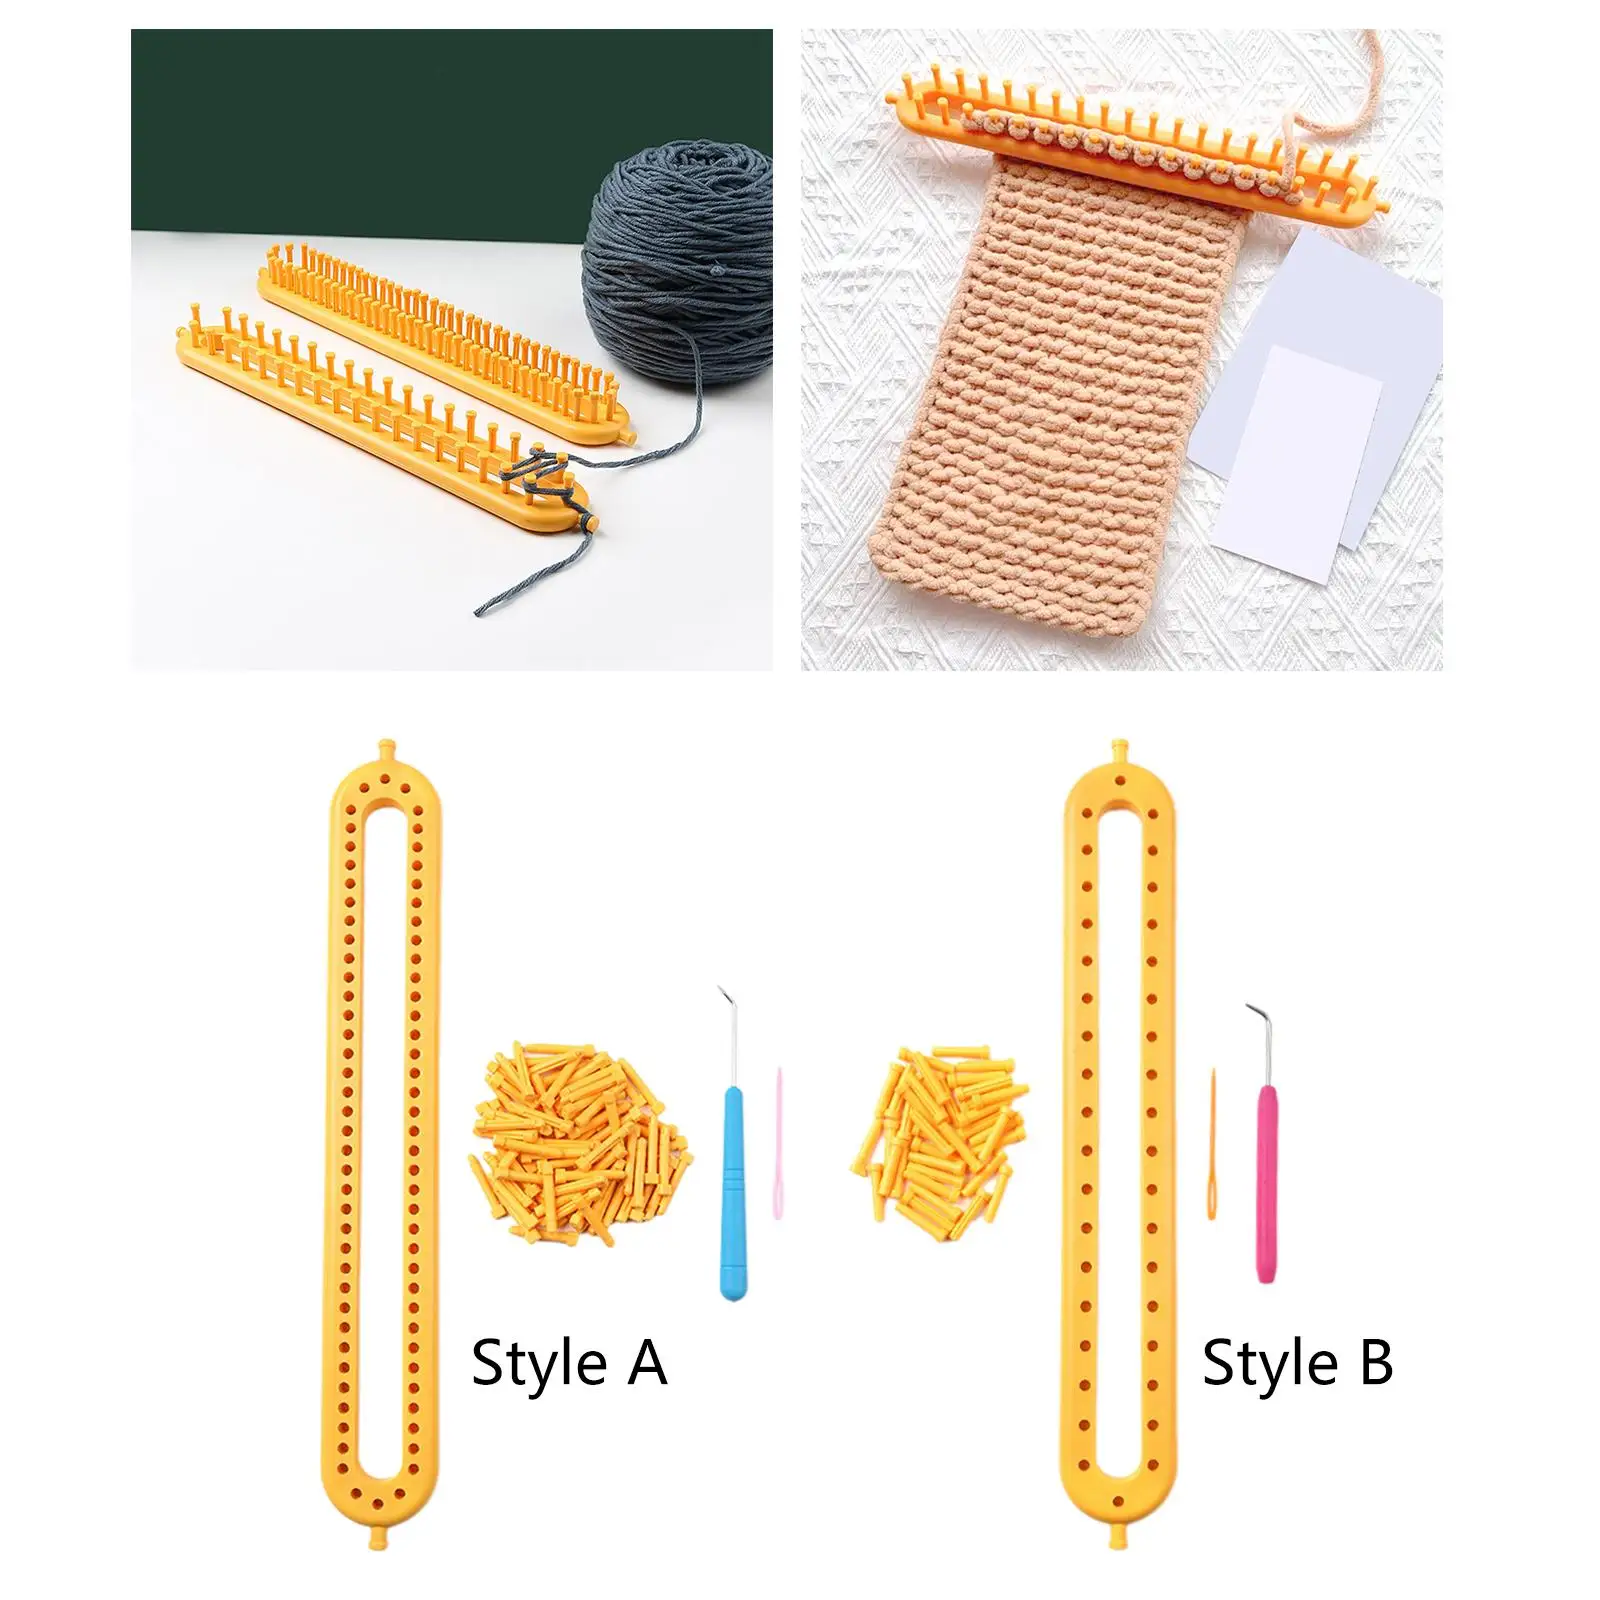 Knitting Loom Set DIY Machine Handmade Kit Crochet Loom for Blanket Hat